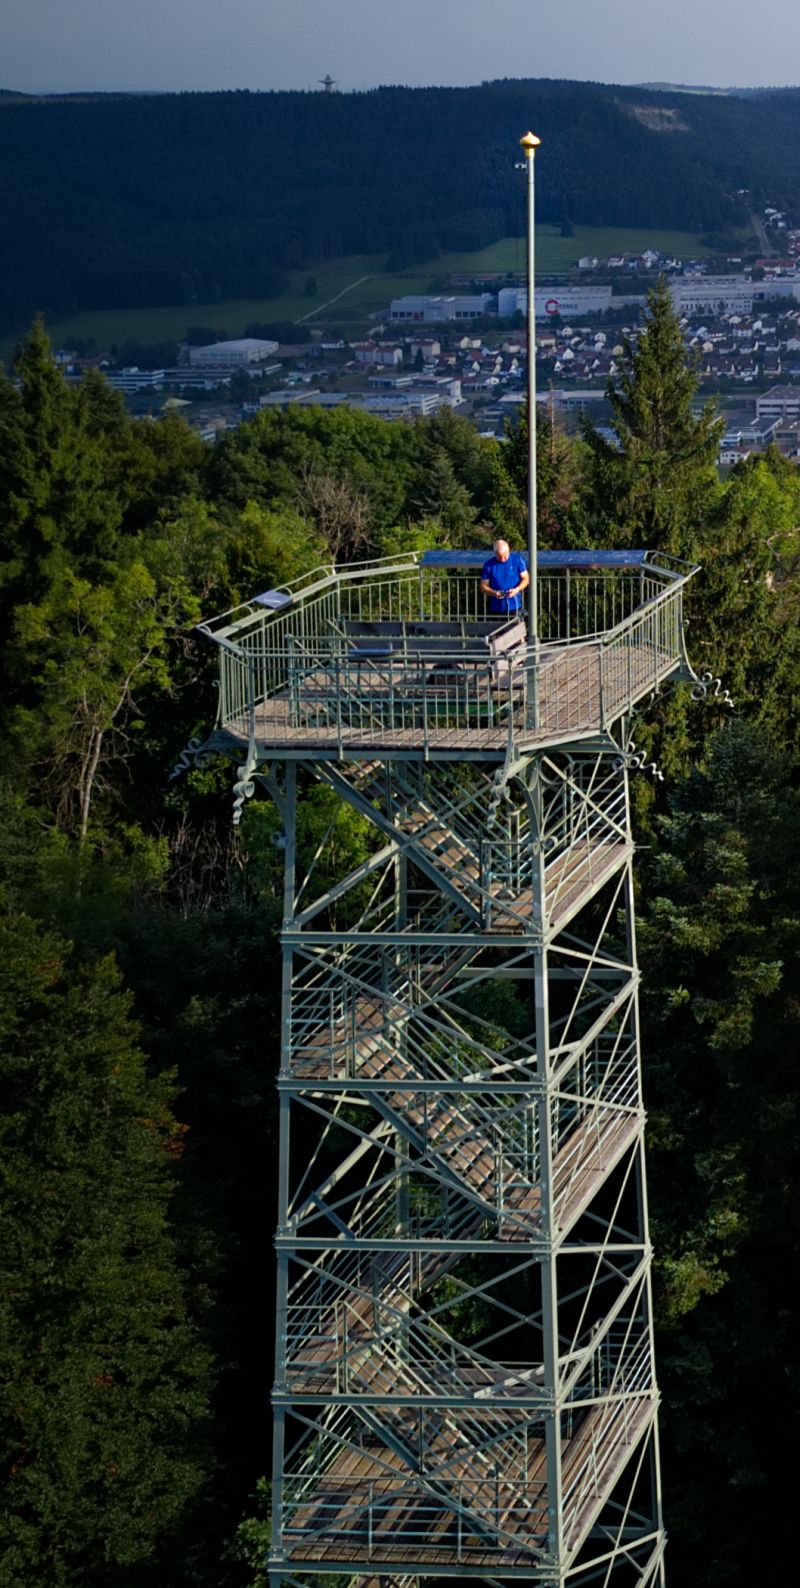 Bild vom Lembergturm von oben mit Blick auf Gosheim. Oben auf dem Turm steht eine Person mit blauem T-Shirt